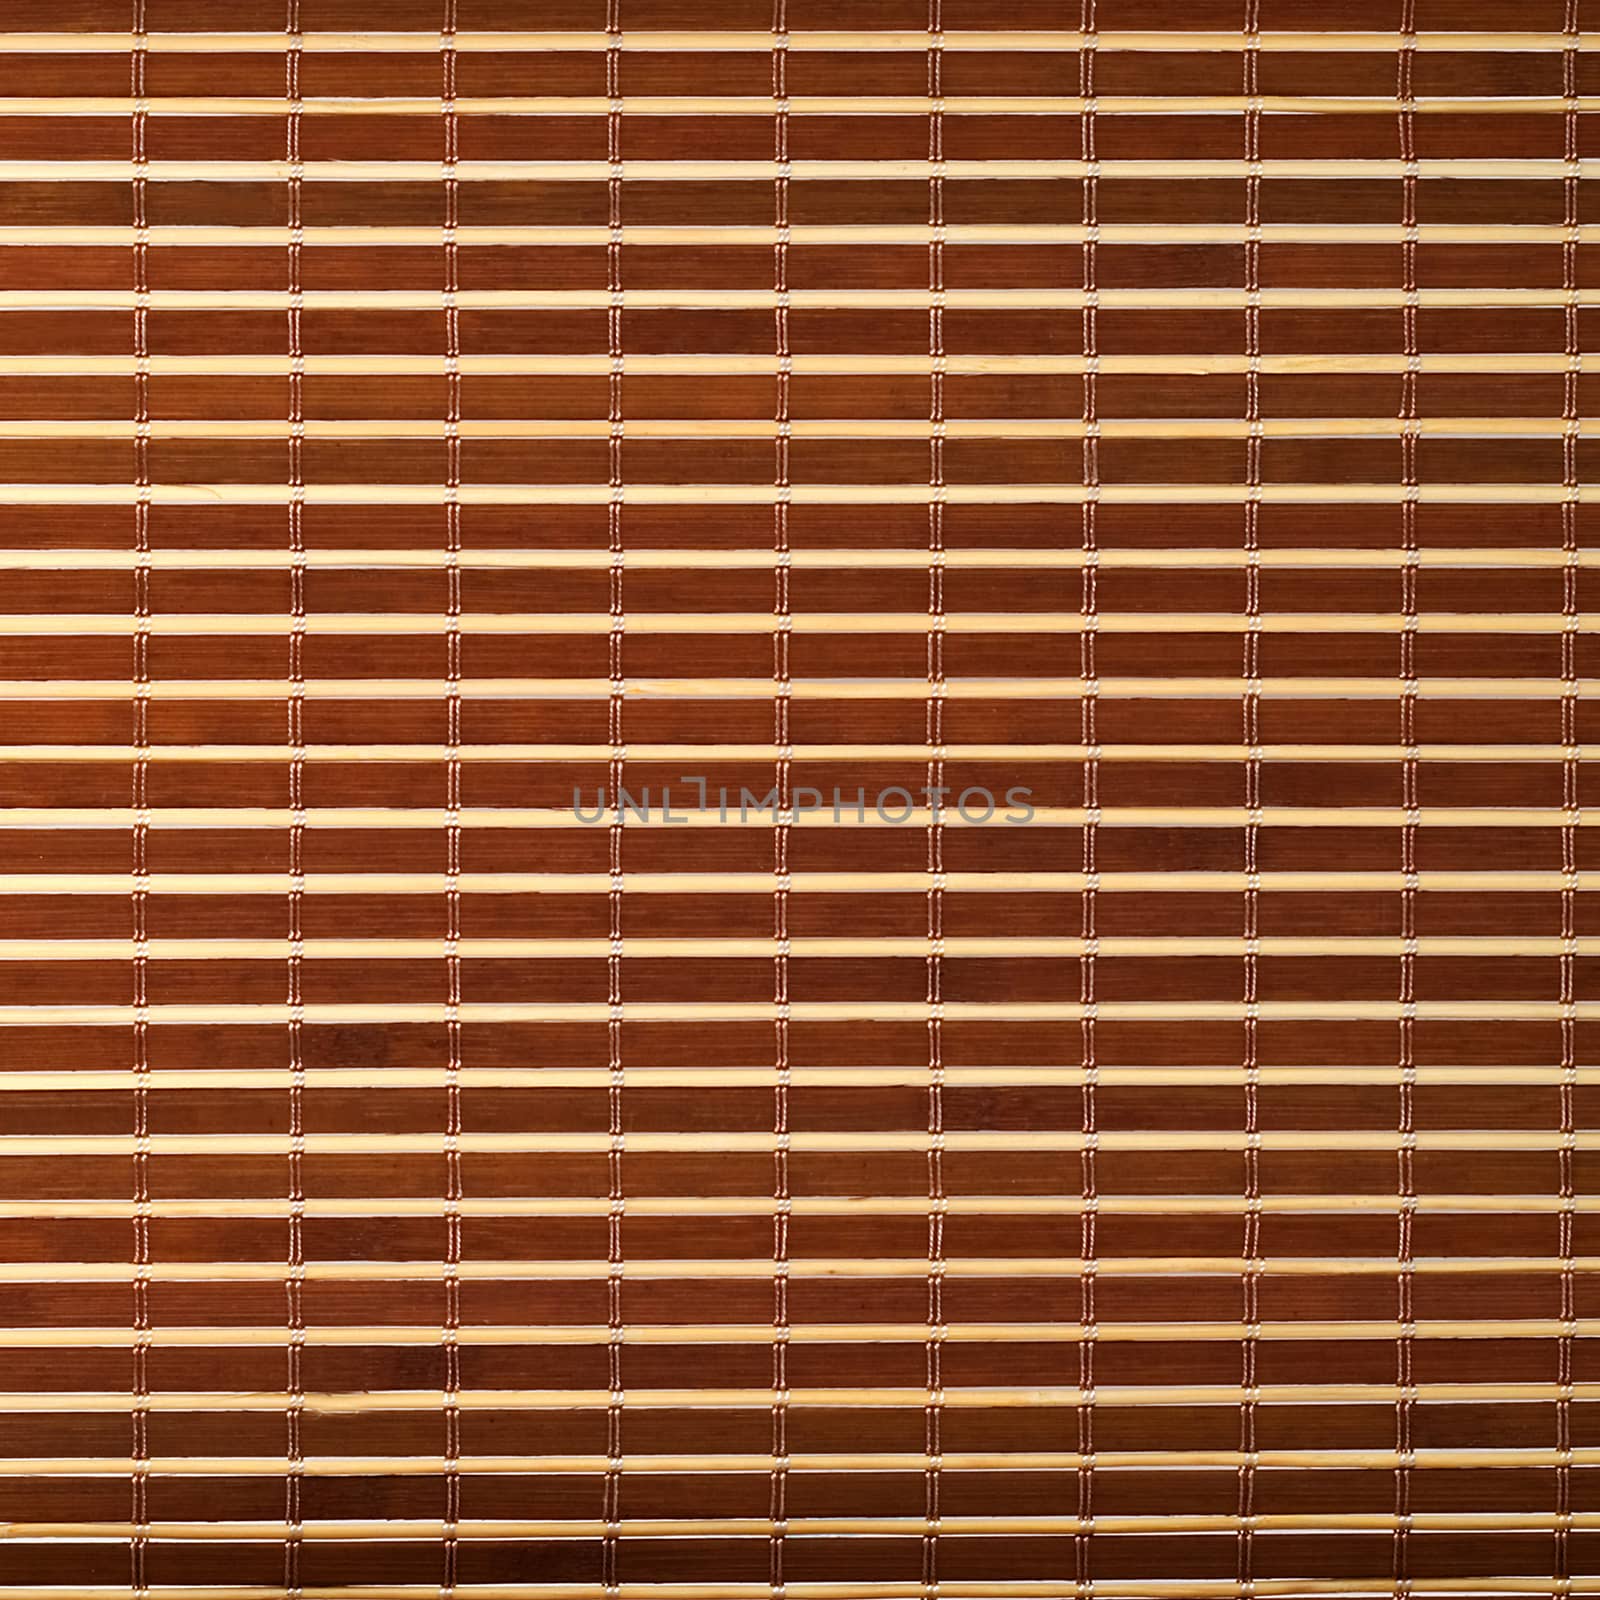 Bamboo mat wooden backgorund by Vladyslav